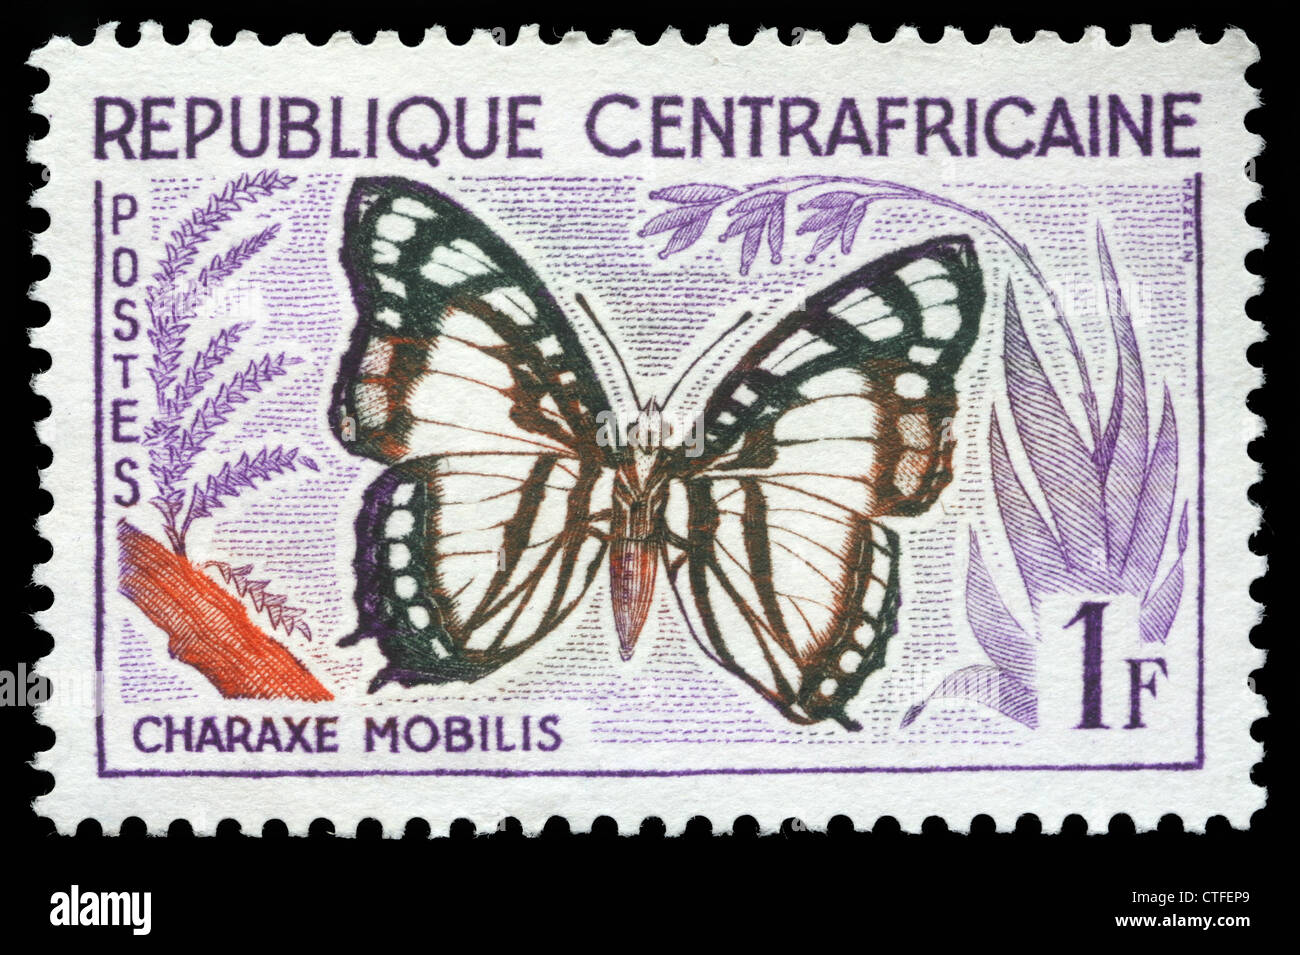 Repubblica Centrafricana - circa 1960:un timbro stampato nella Repubblica Africana Centrale mostra una farfalla, Charax Mobilis, circa 1960 Foto Stock